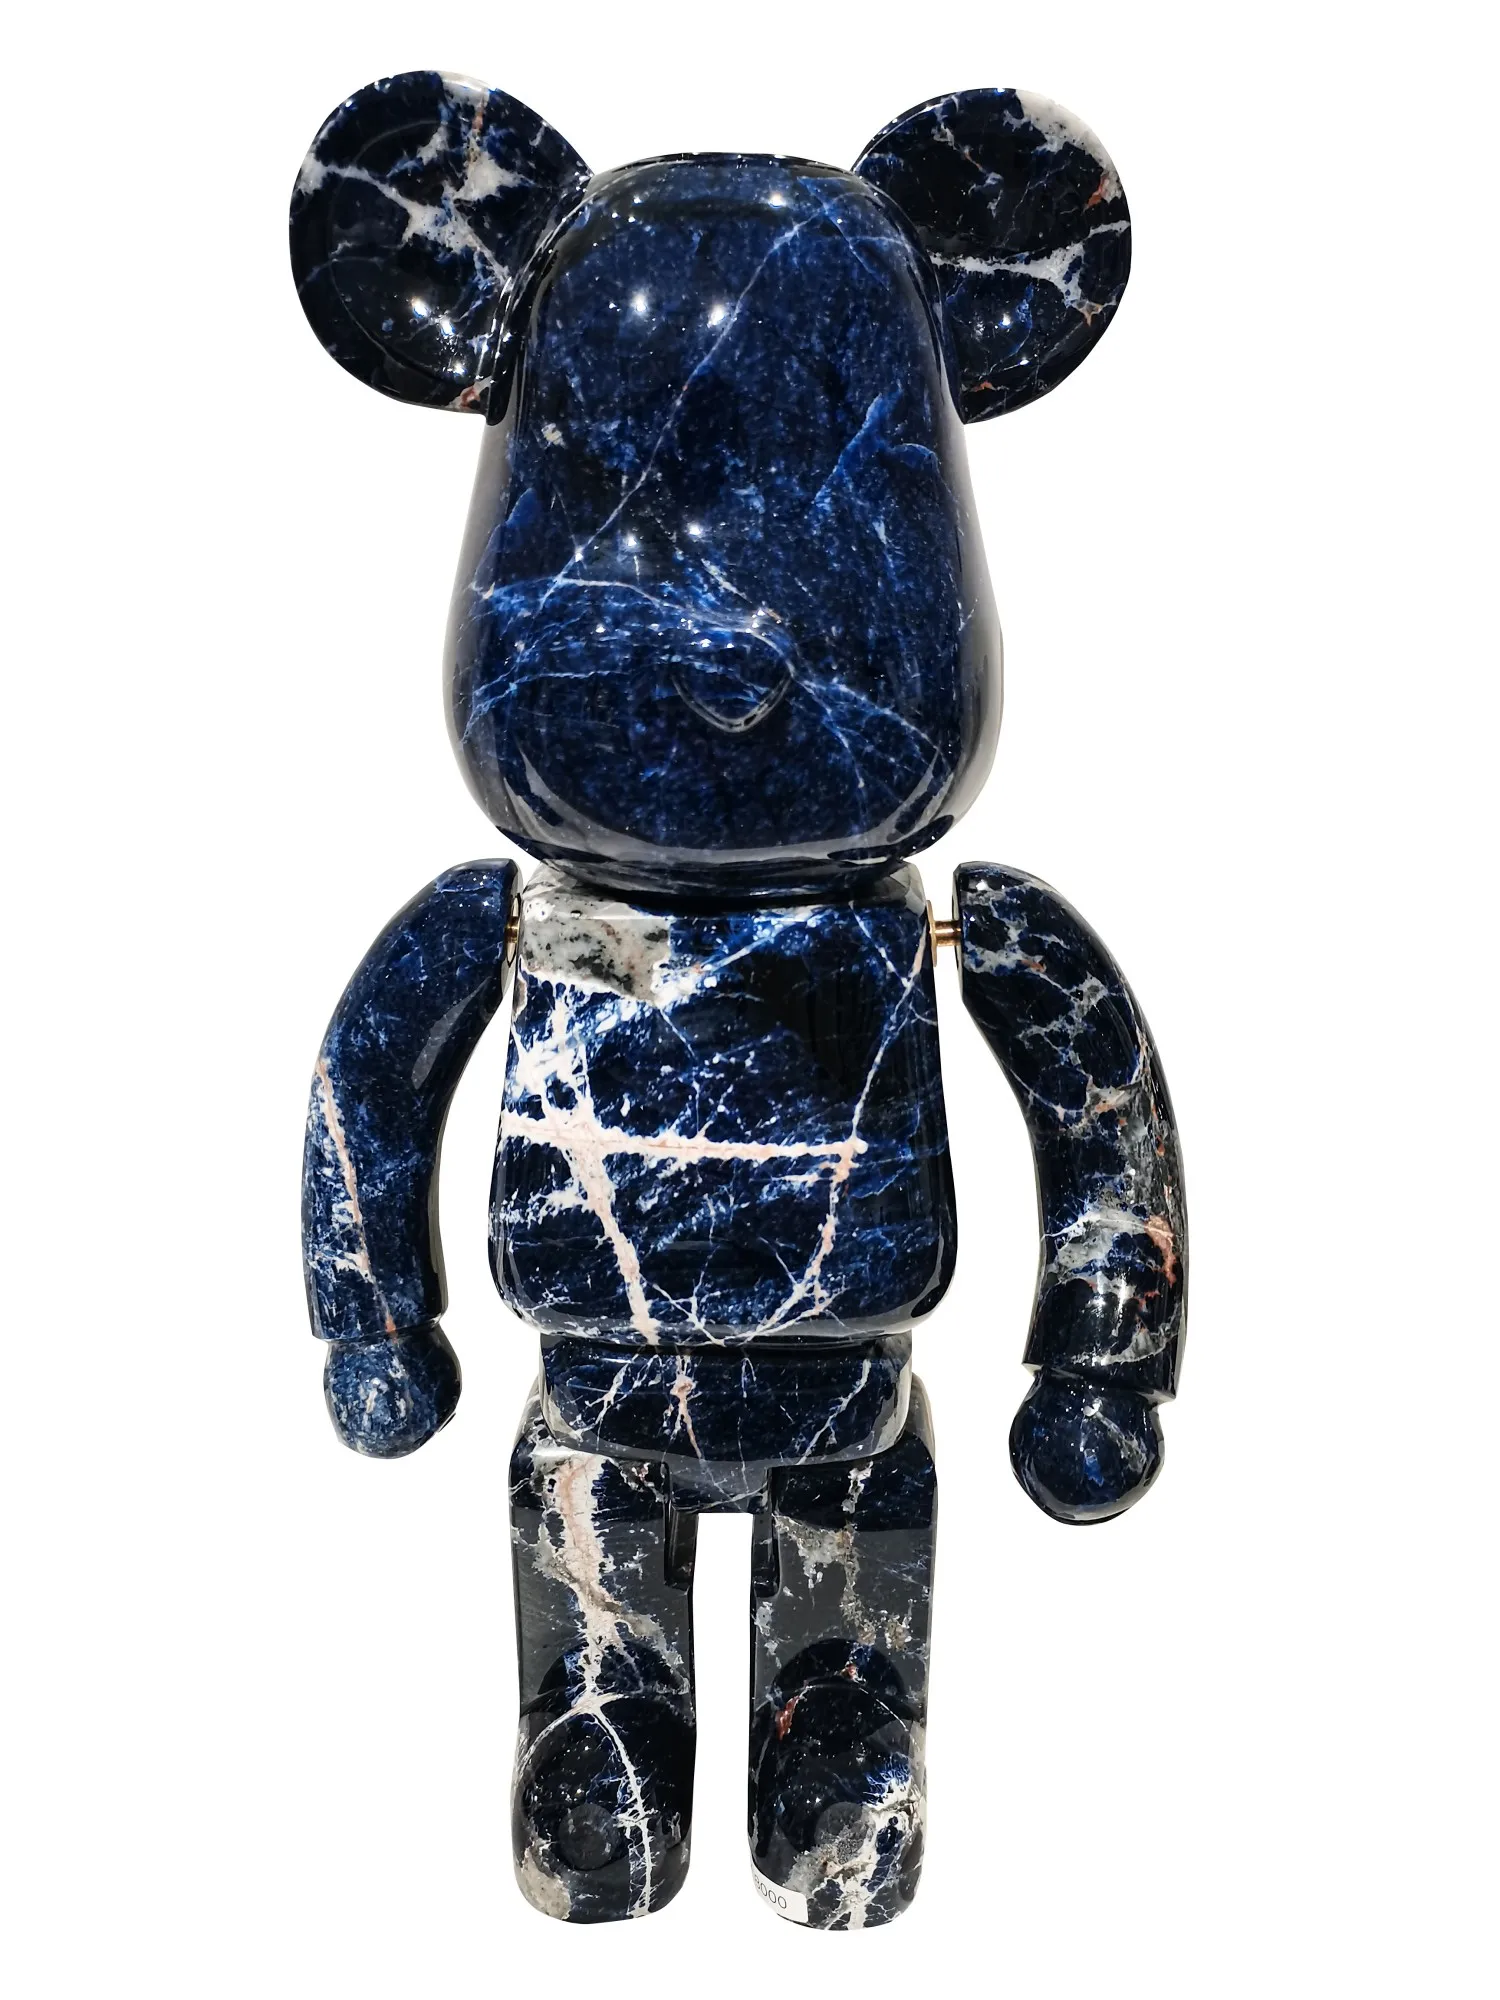 Китайская натуральная синяя мраморная перегородчатая мраморная скульптура мраморный Медведь Статуя мрамор